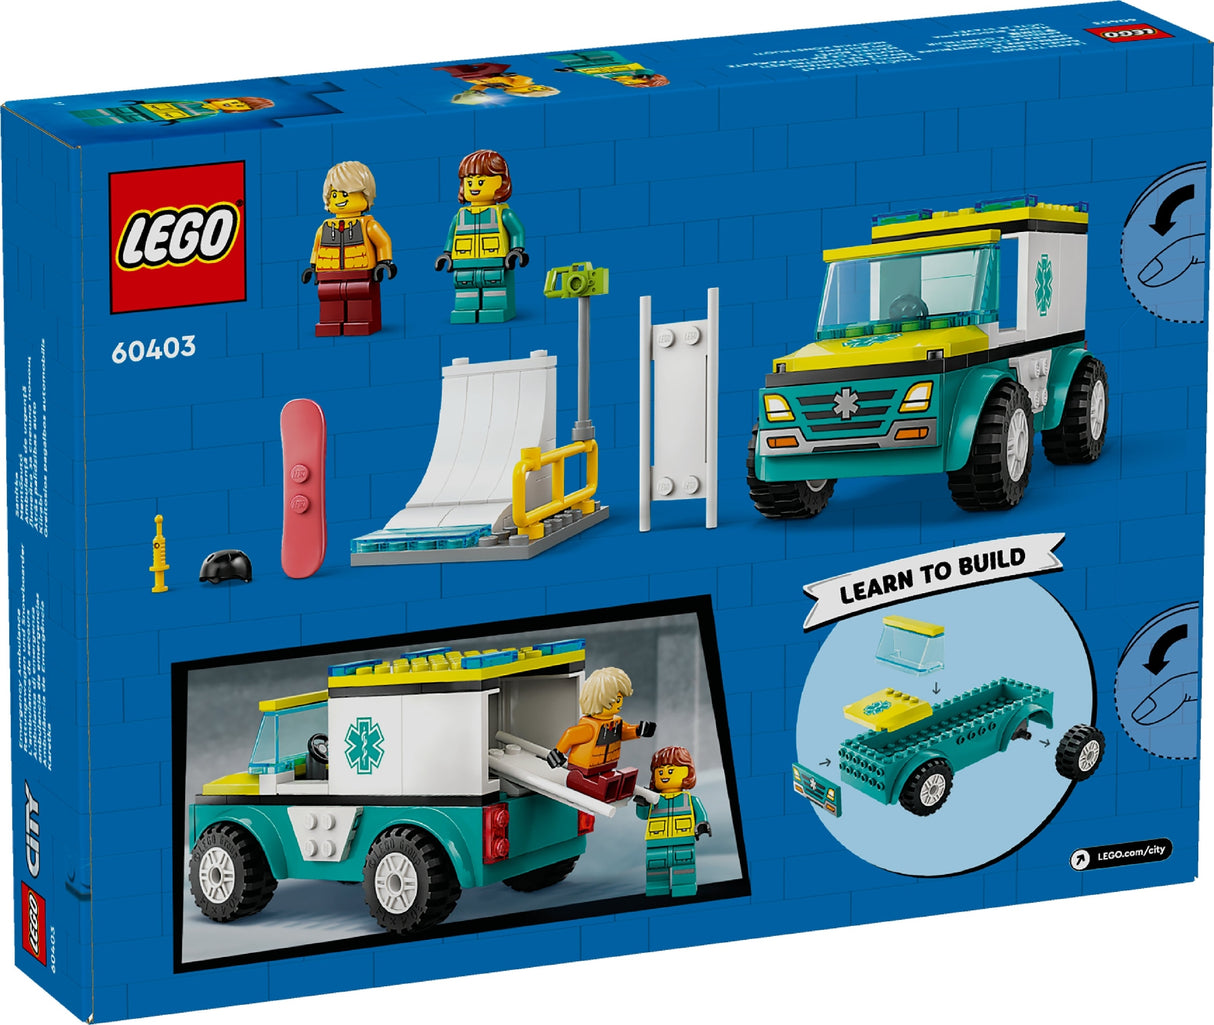 LEGO CITY EMERGENCY AMBULANCE AND SNOWBOARDER 60403 AGE: 4+